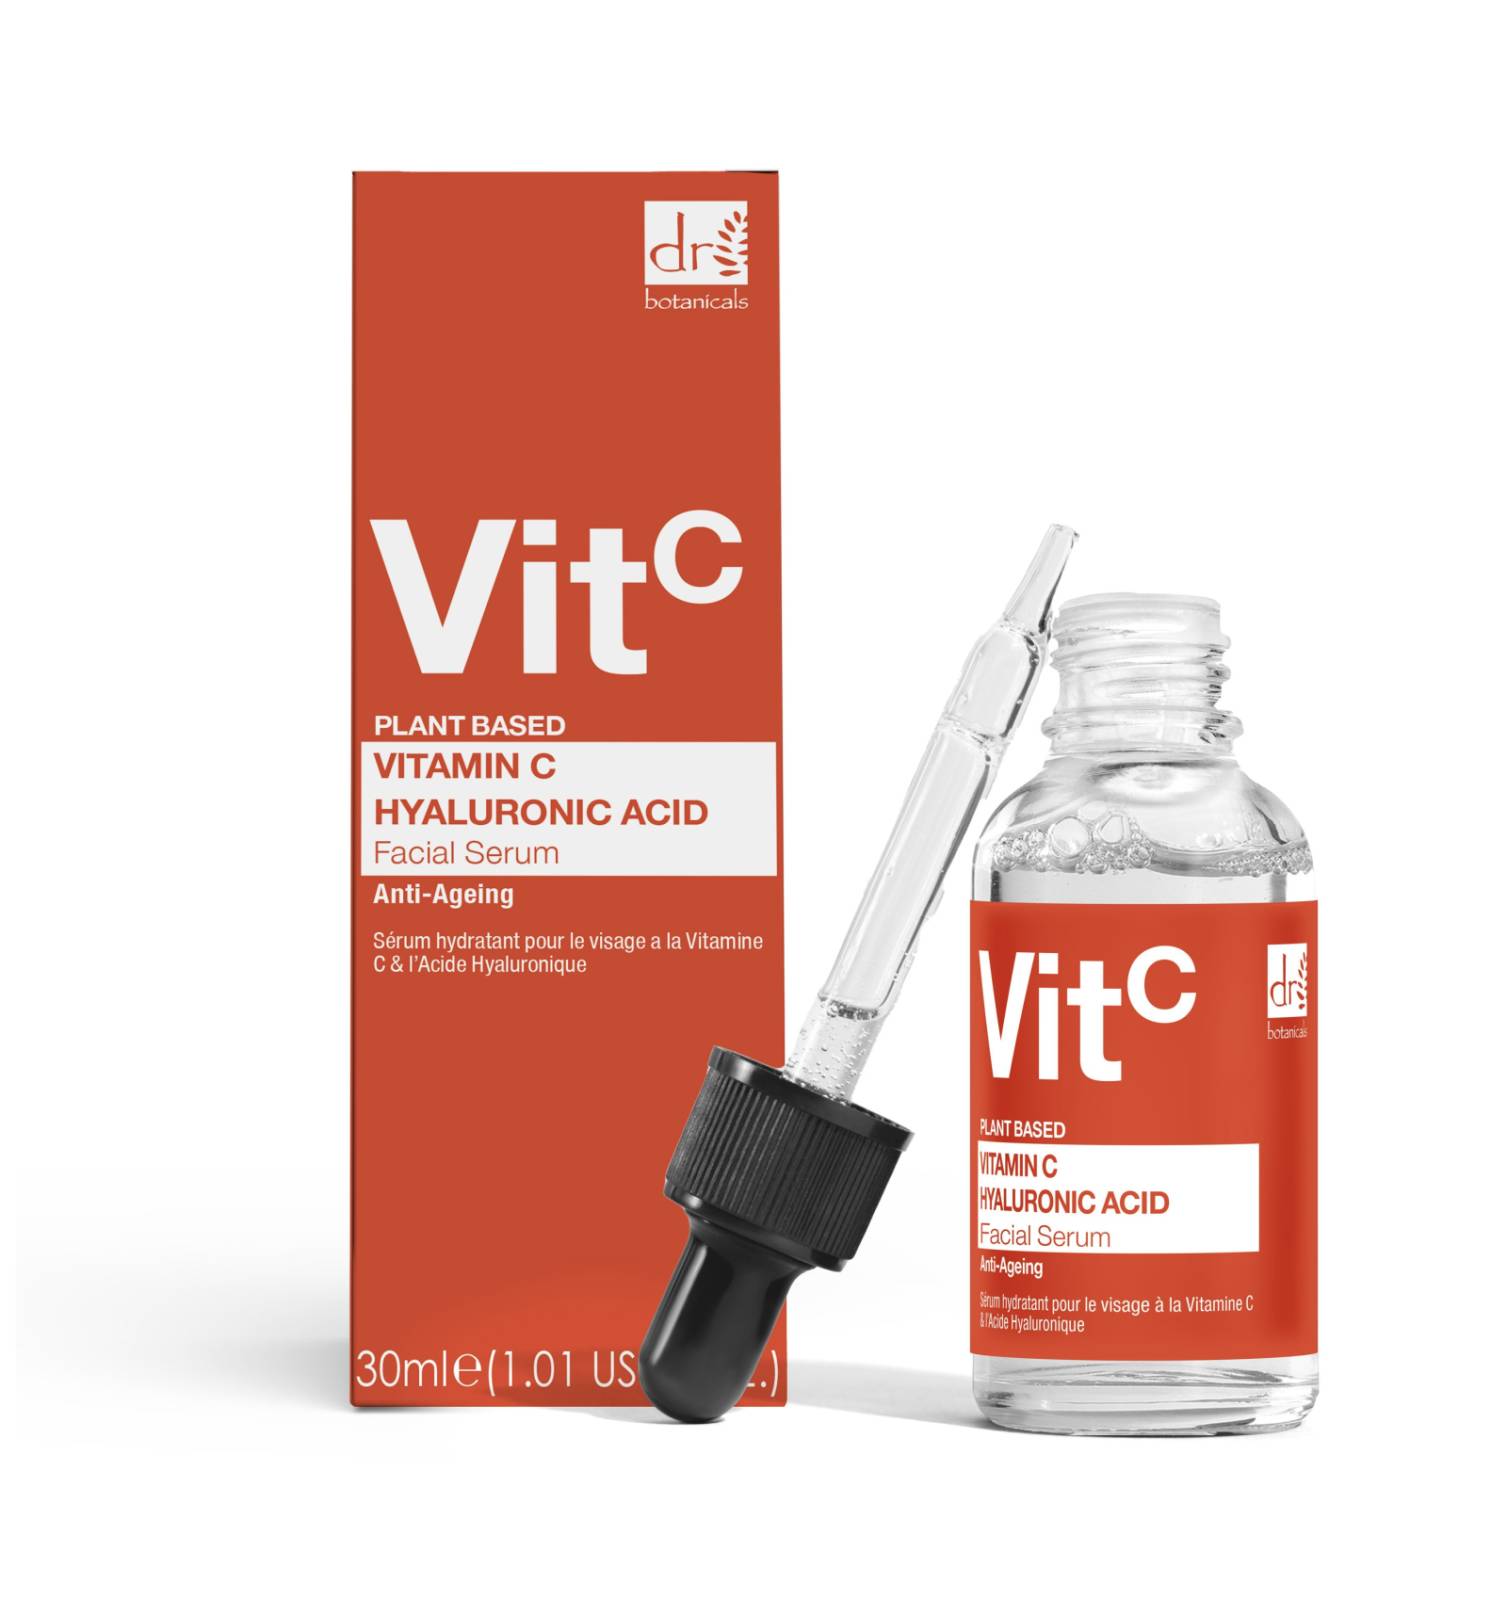 Dr Botanicals Vitamin C & Hyaluronic Eye Hydrating Facial Serum 30ml